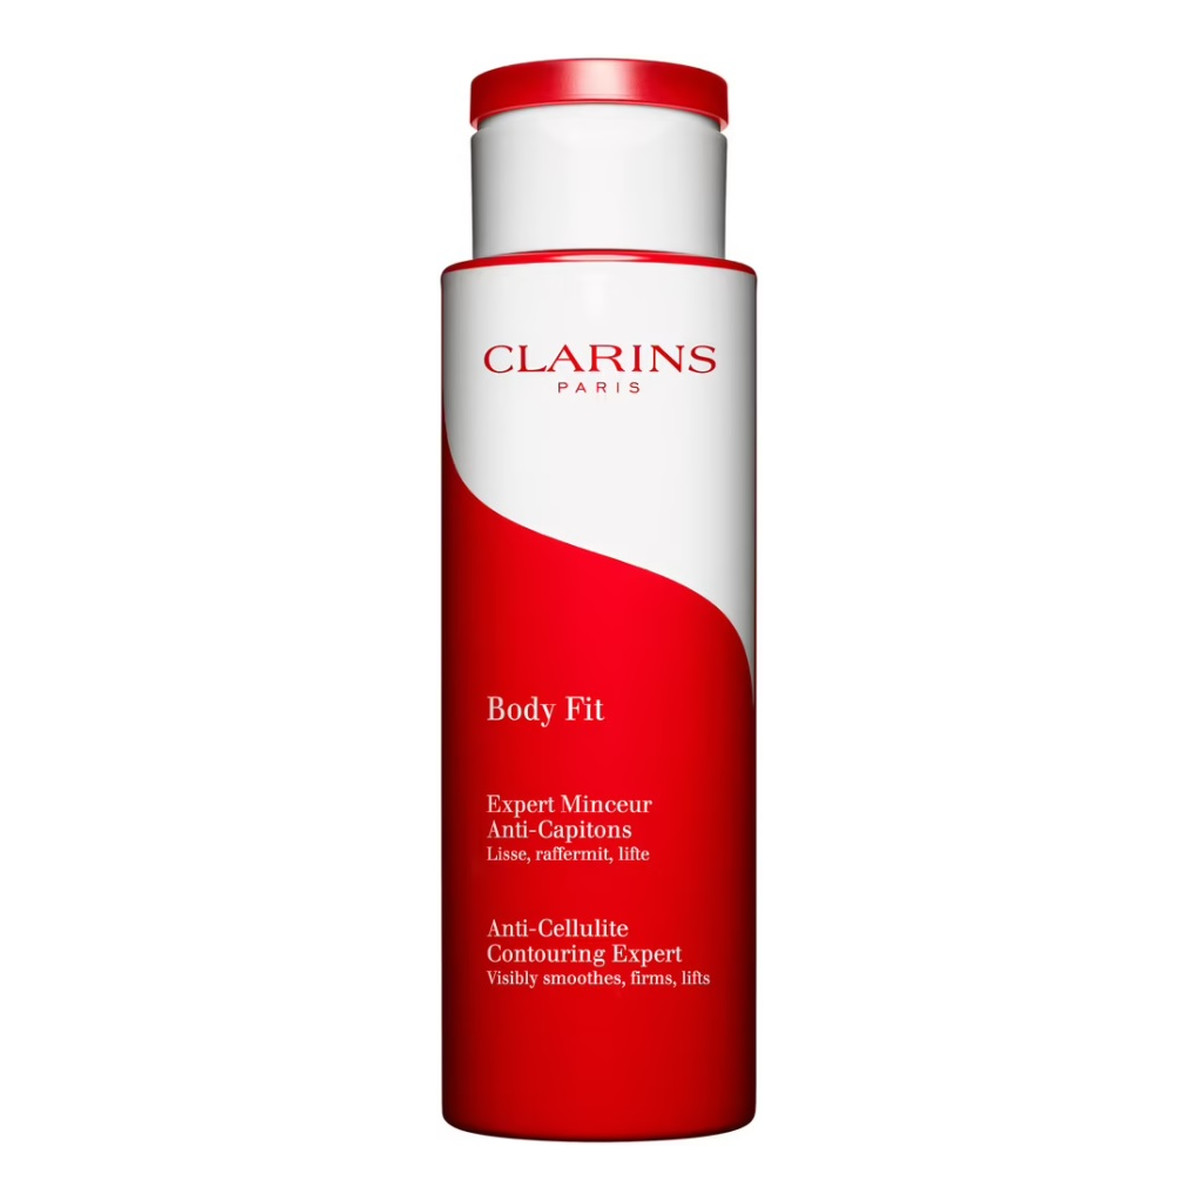 Clarins Body Fit Anti-Celluite Contouring Expert Balsam ujędrniający przeciw cellulitowi 200ml